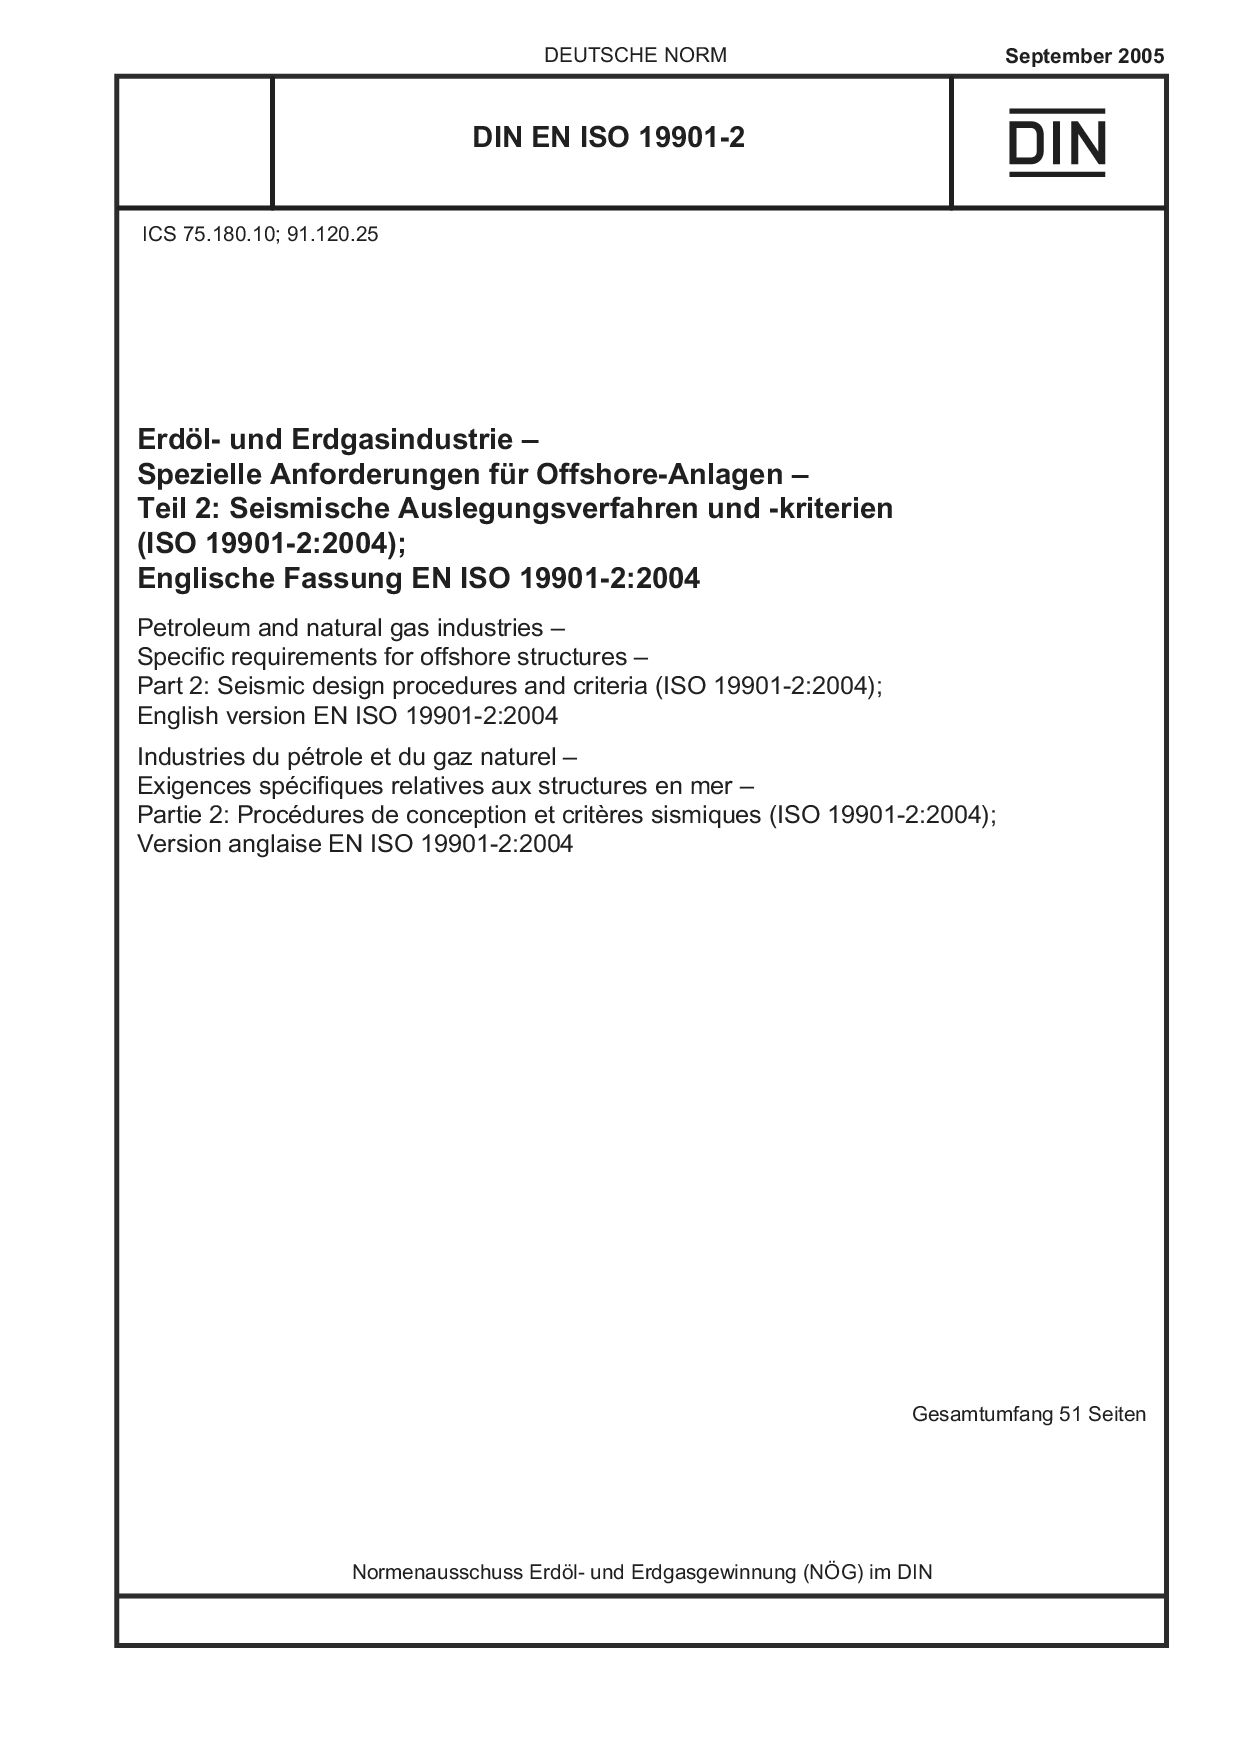 DIN EN ISO 19901-2:2005